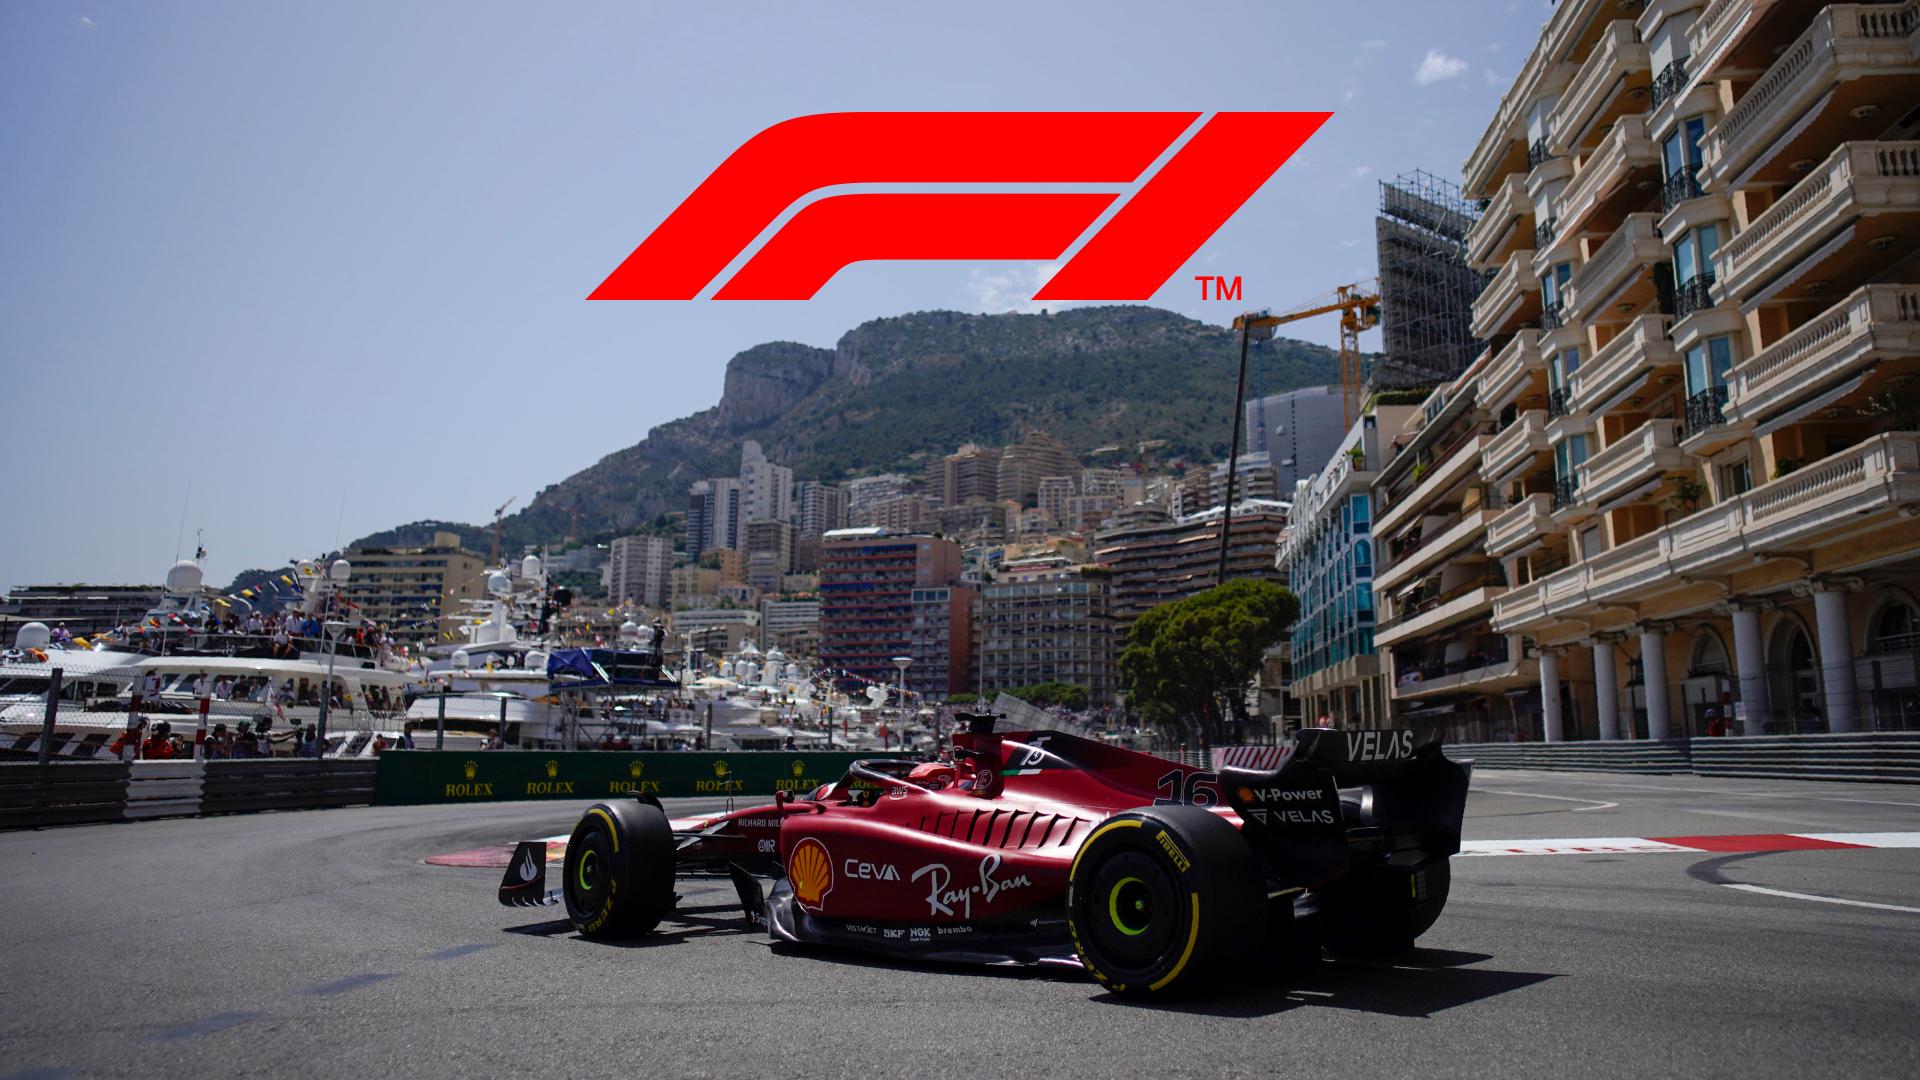 LIVE : Formula 1 - Veľká cena Monaka / F1 2022 | Šport.sk